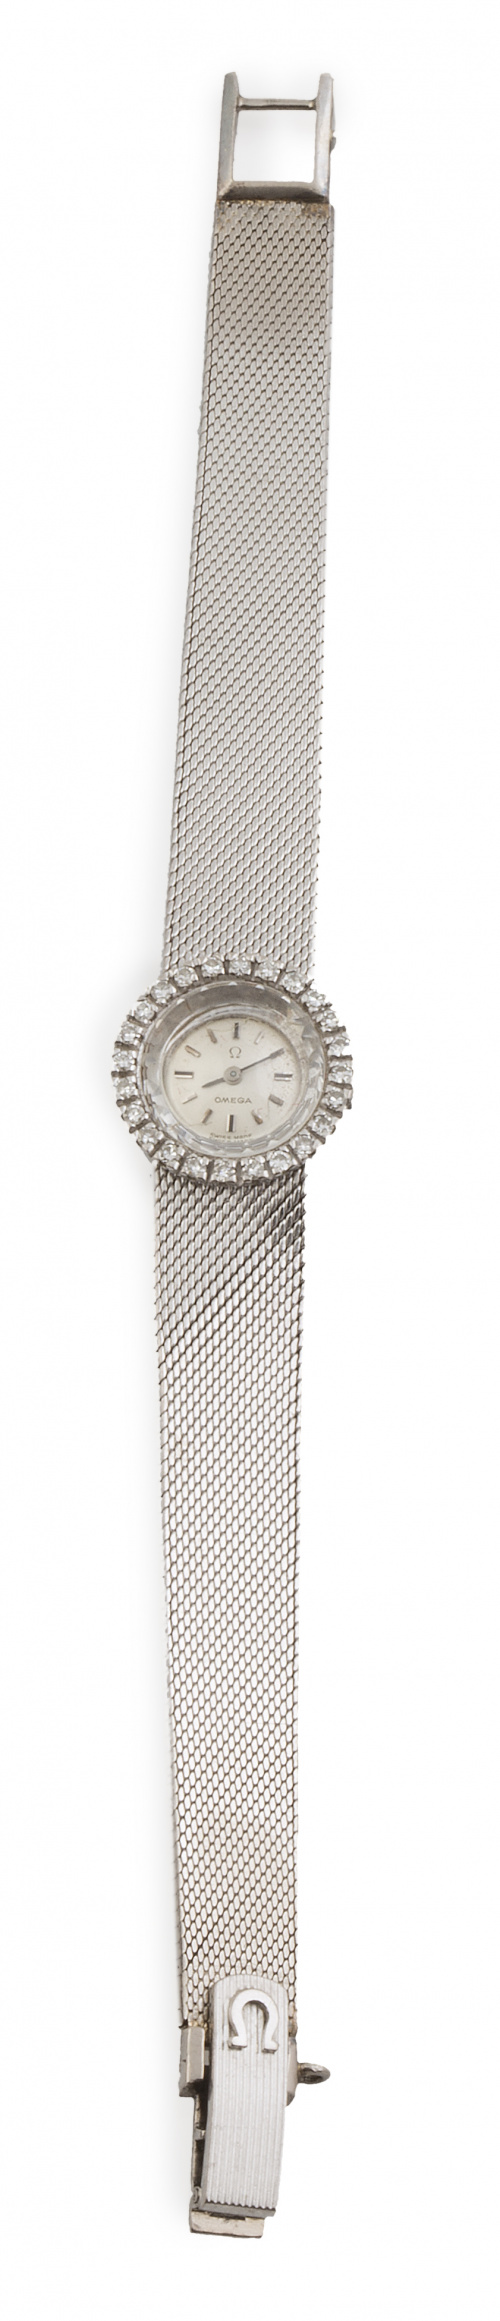 Reloj OMEGA años 60 en oro blanco de 18K orlado de brillant